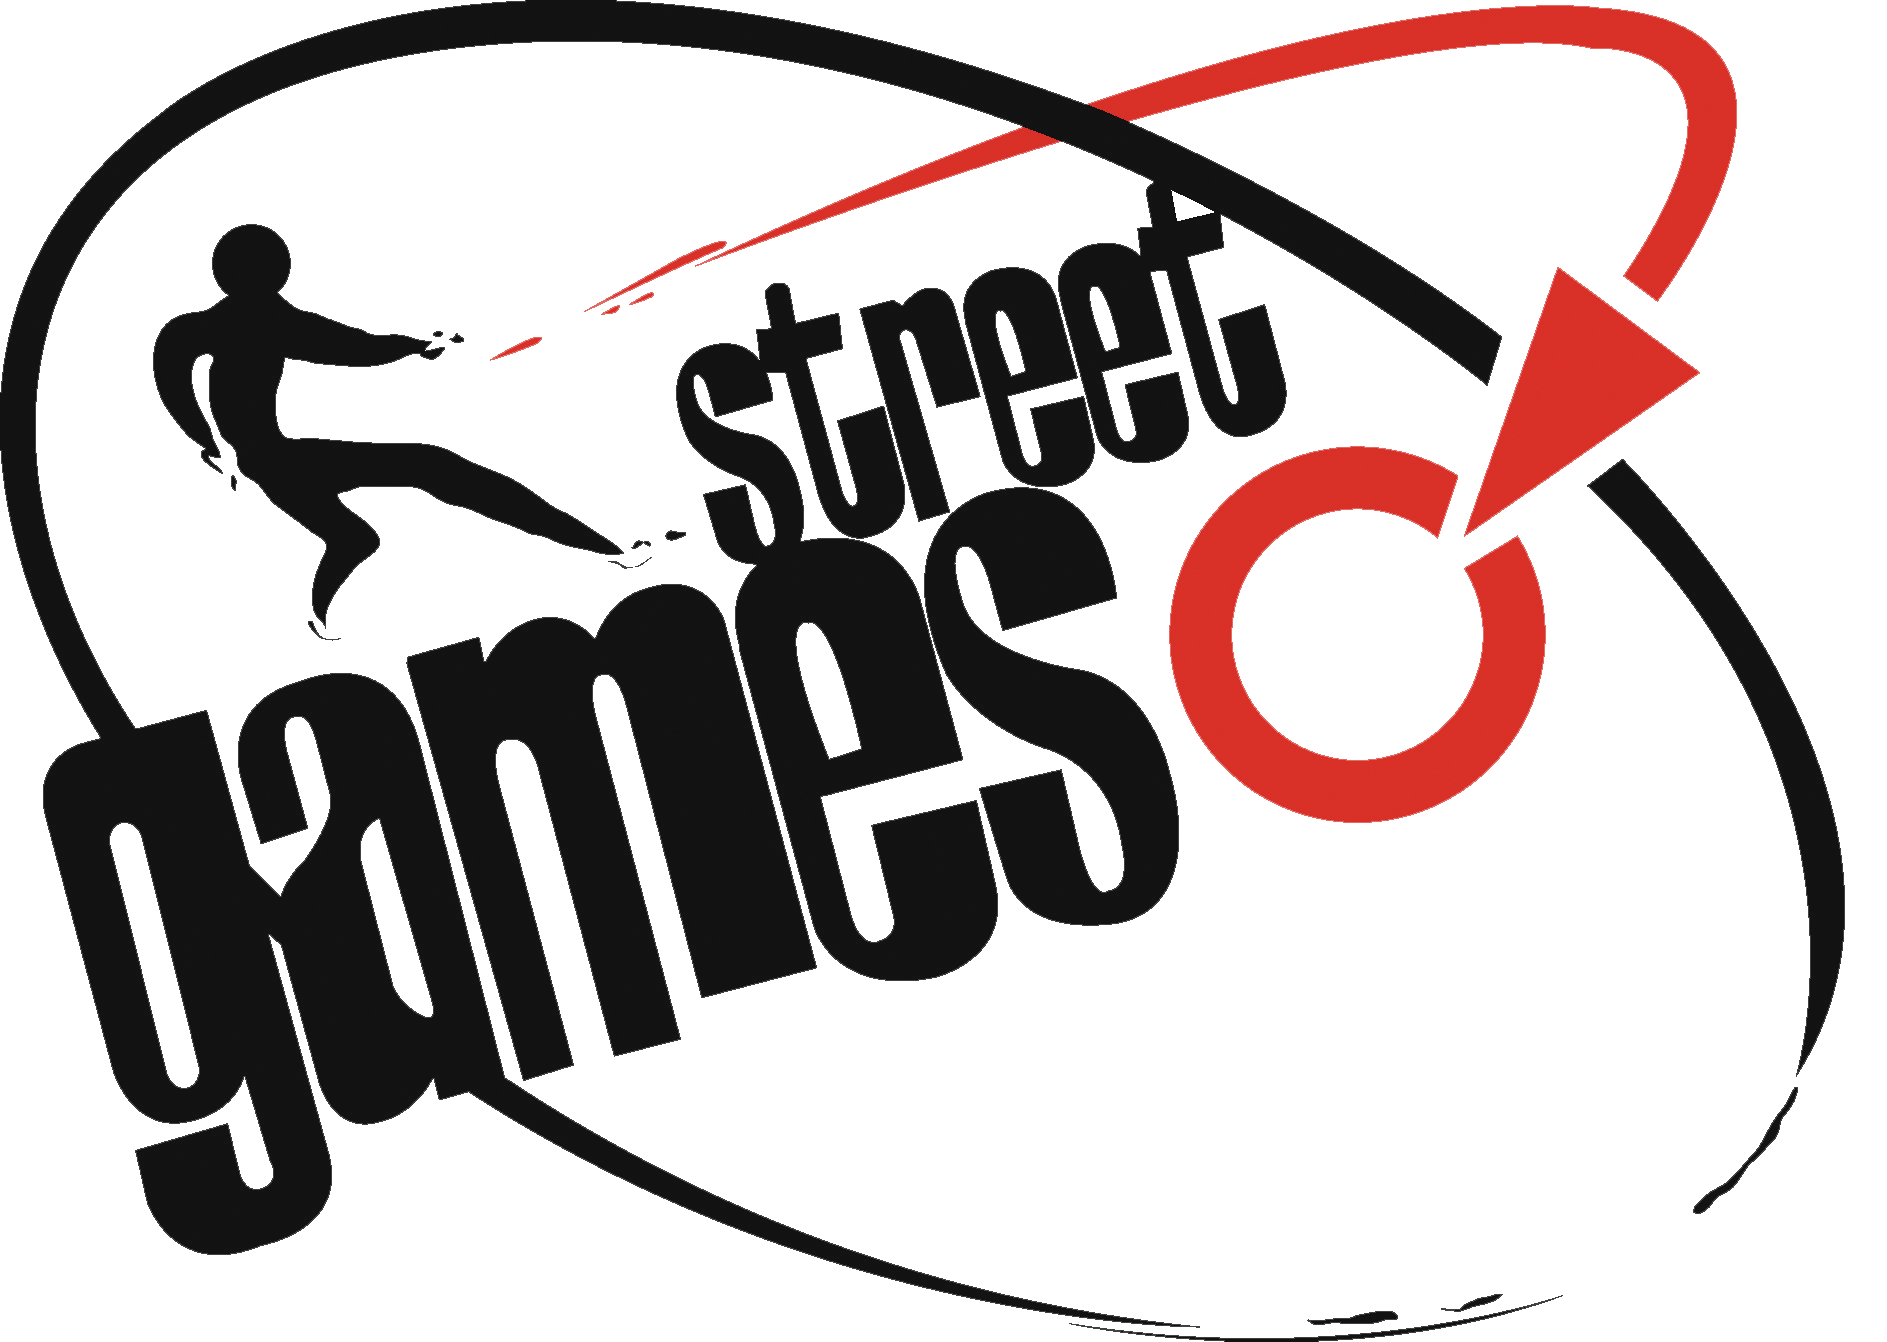 Street Games logo